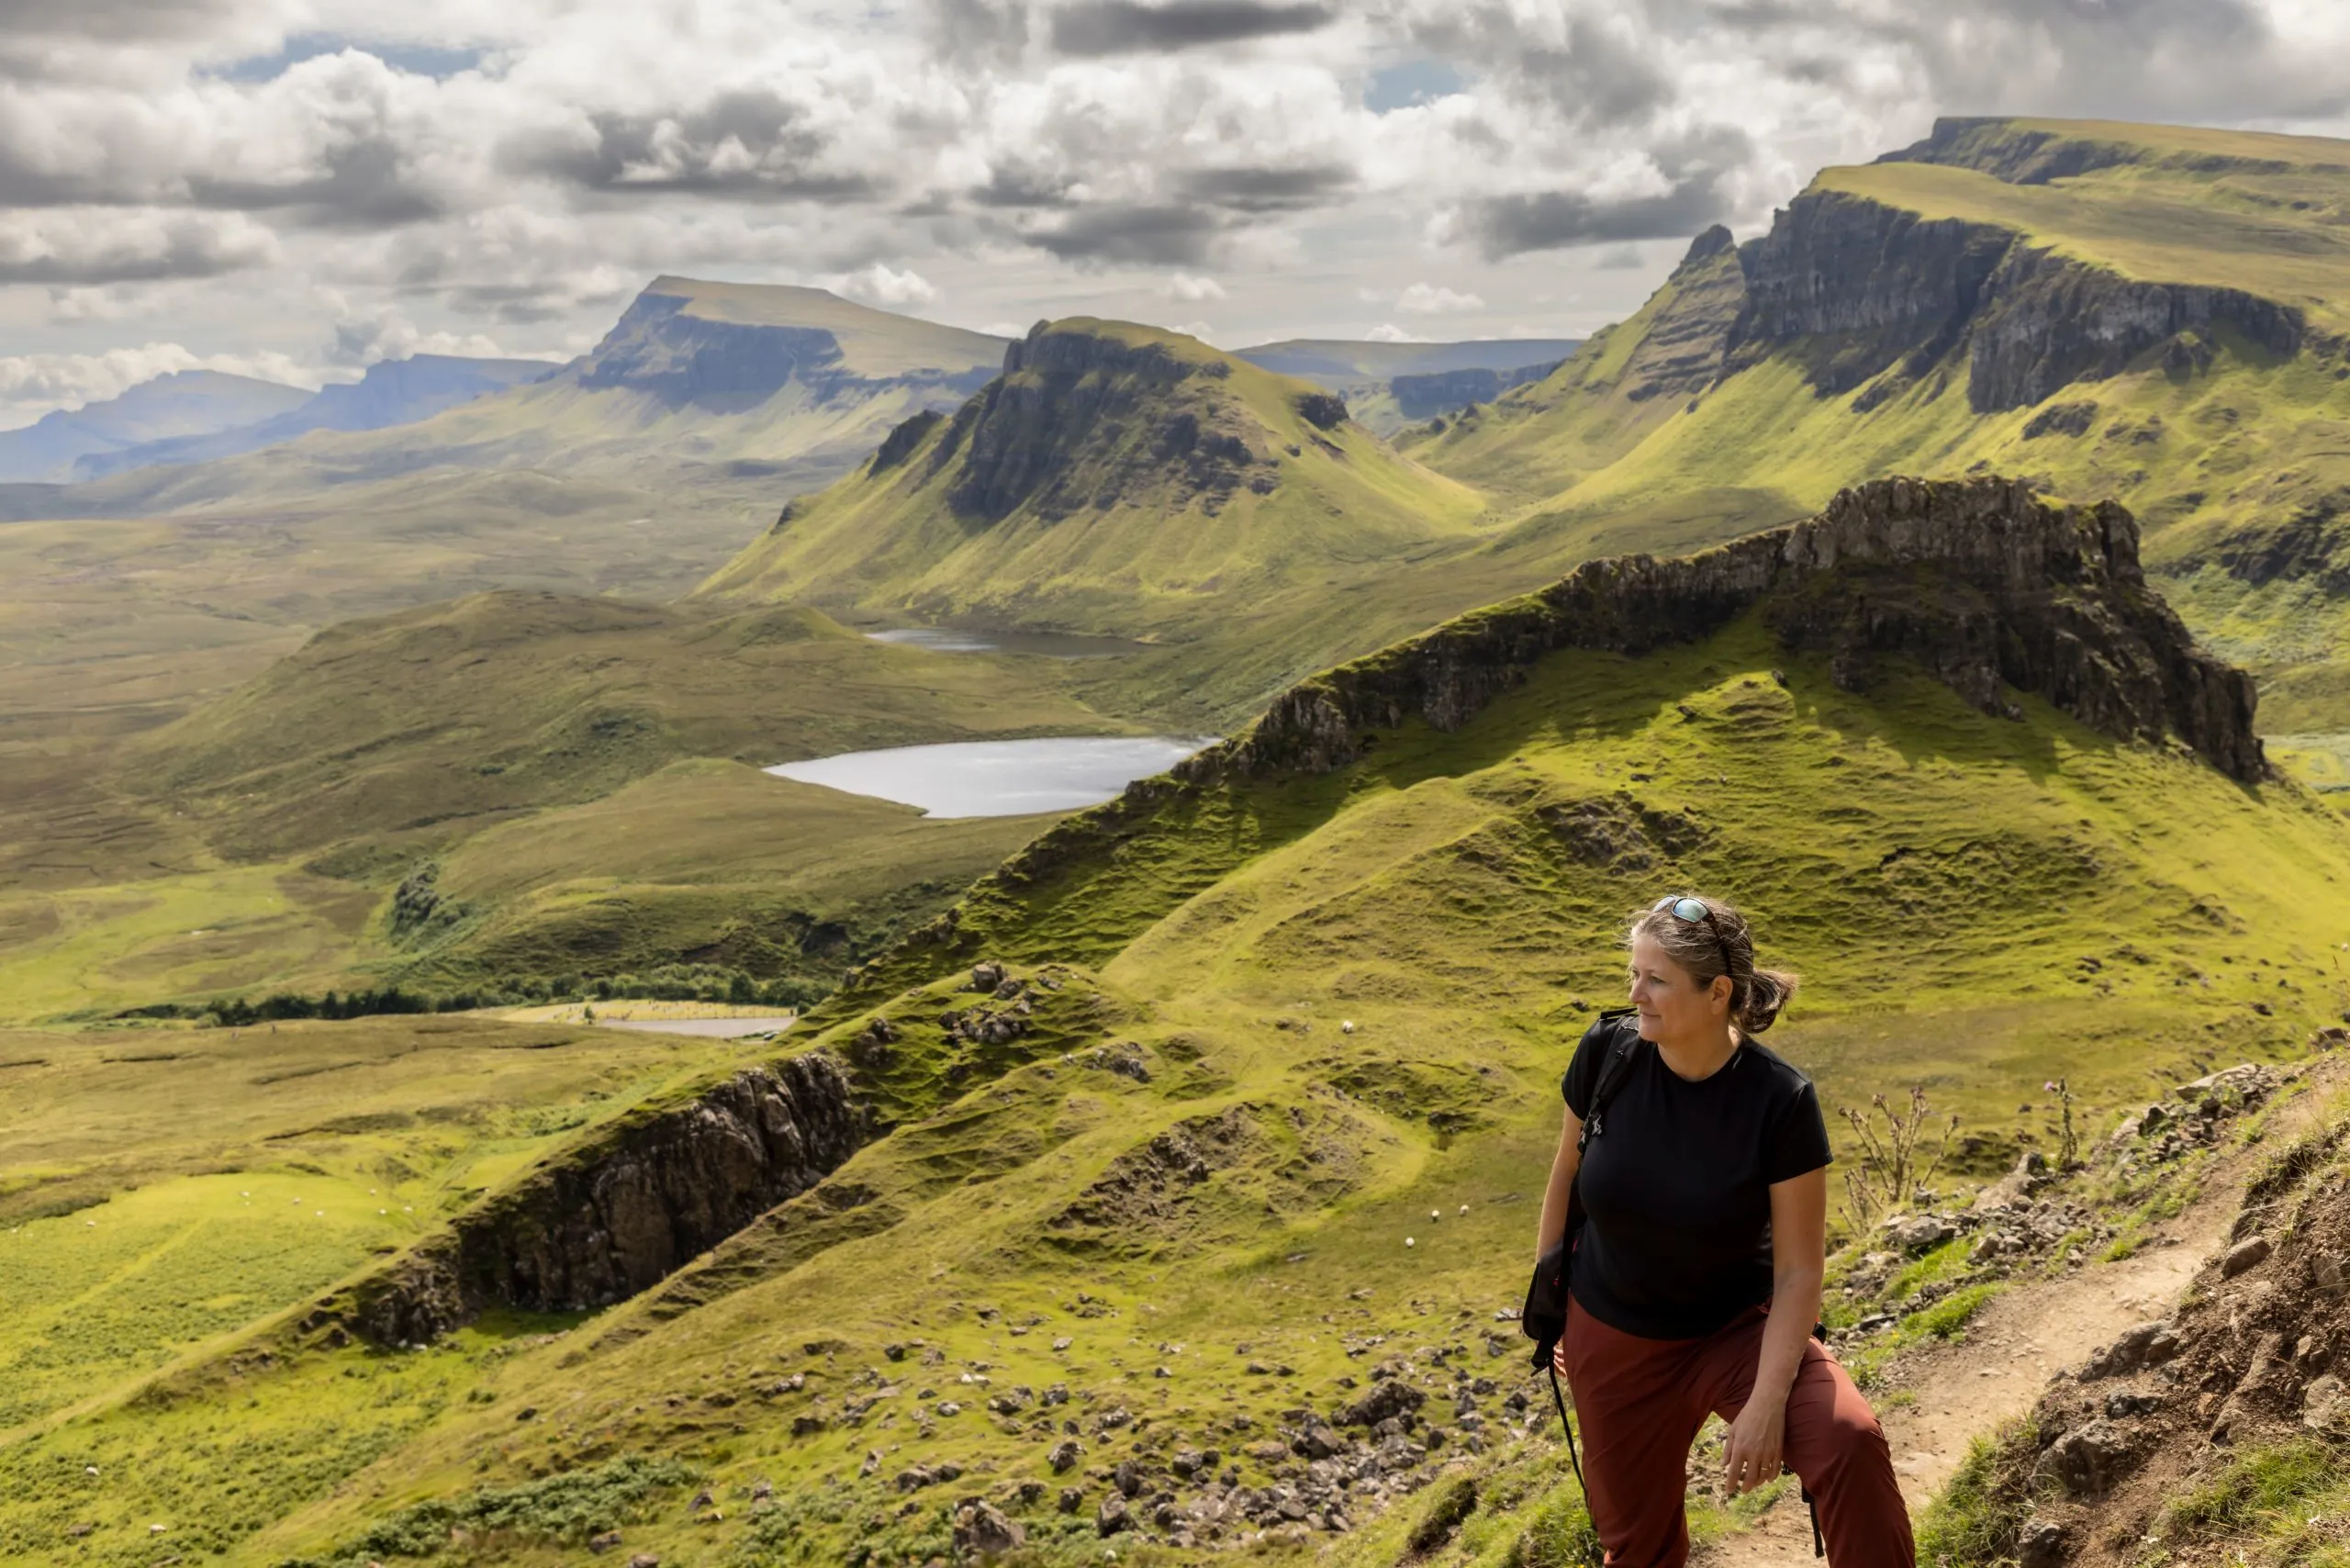 žena na túře na pohoří Quiraing. Jedná se o geologický útvar na skotském ostrově Skye a ráj pro pěší turisty.